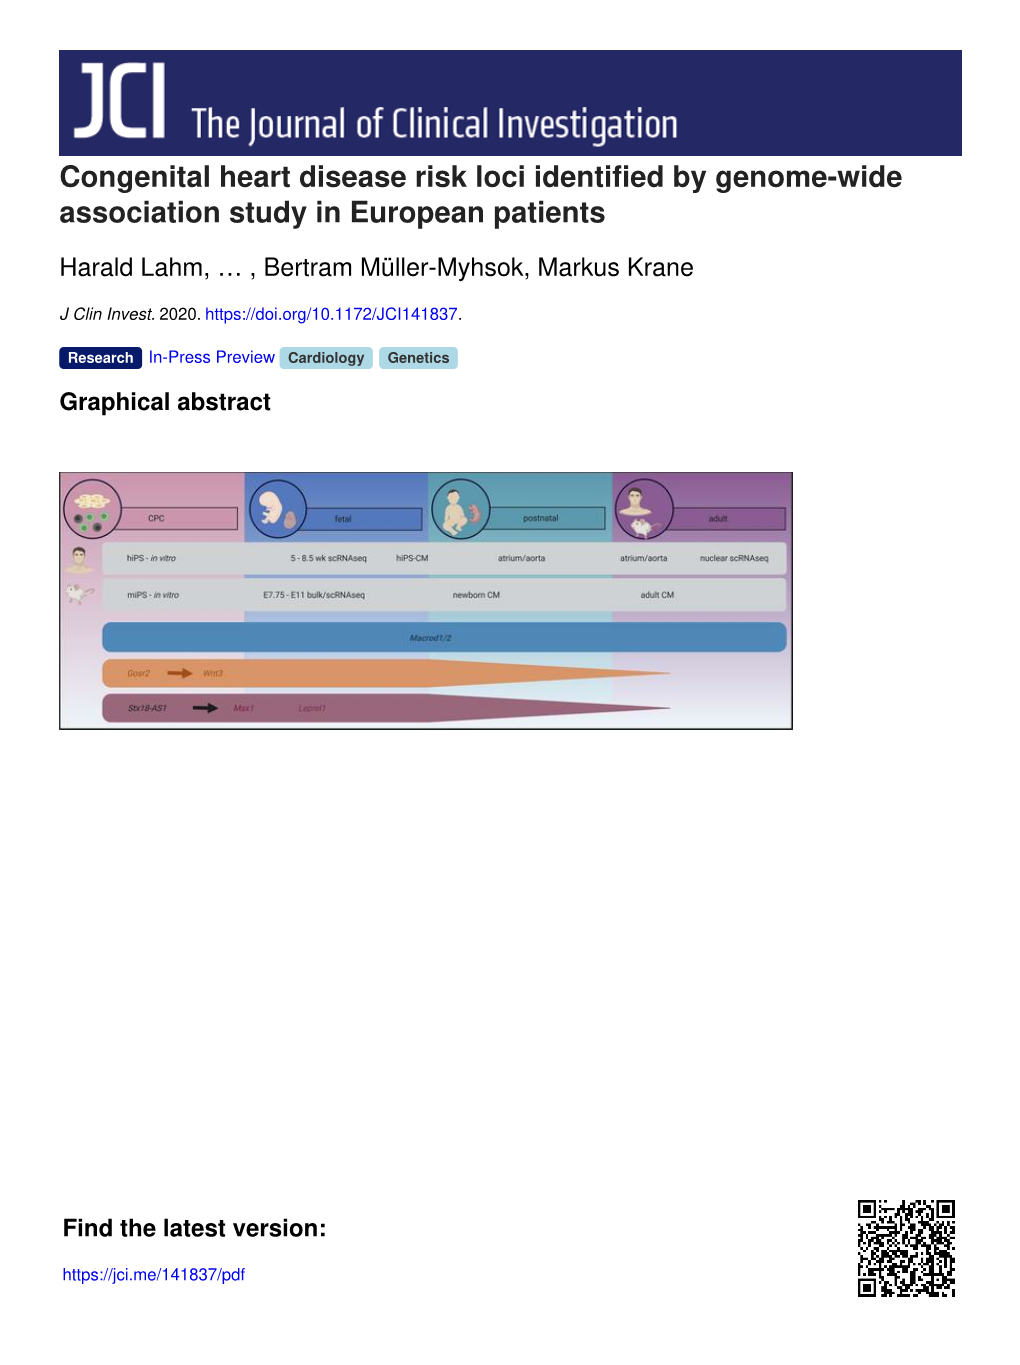 Congenital Heart Disease Risk Loci Identified by Genome-Wide Association Study in European Patients